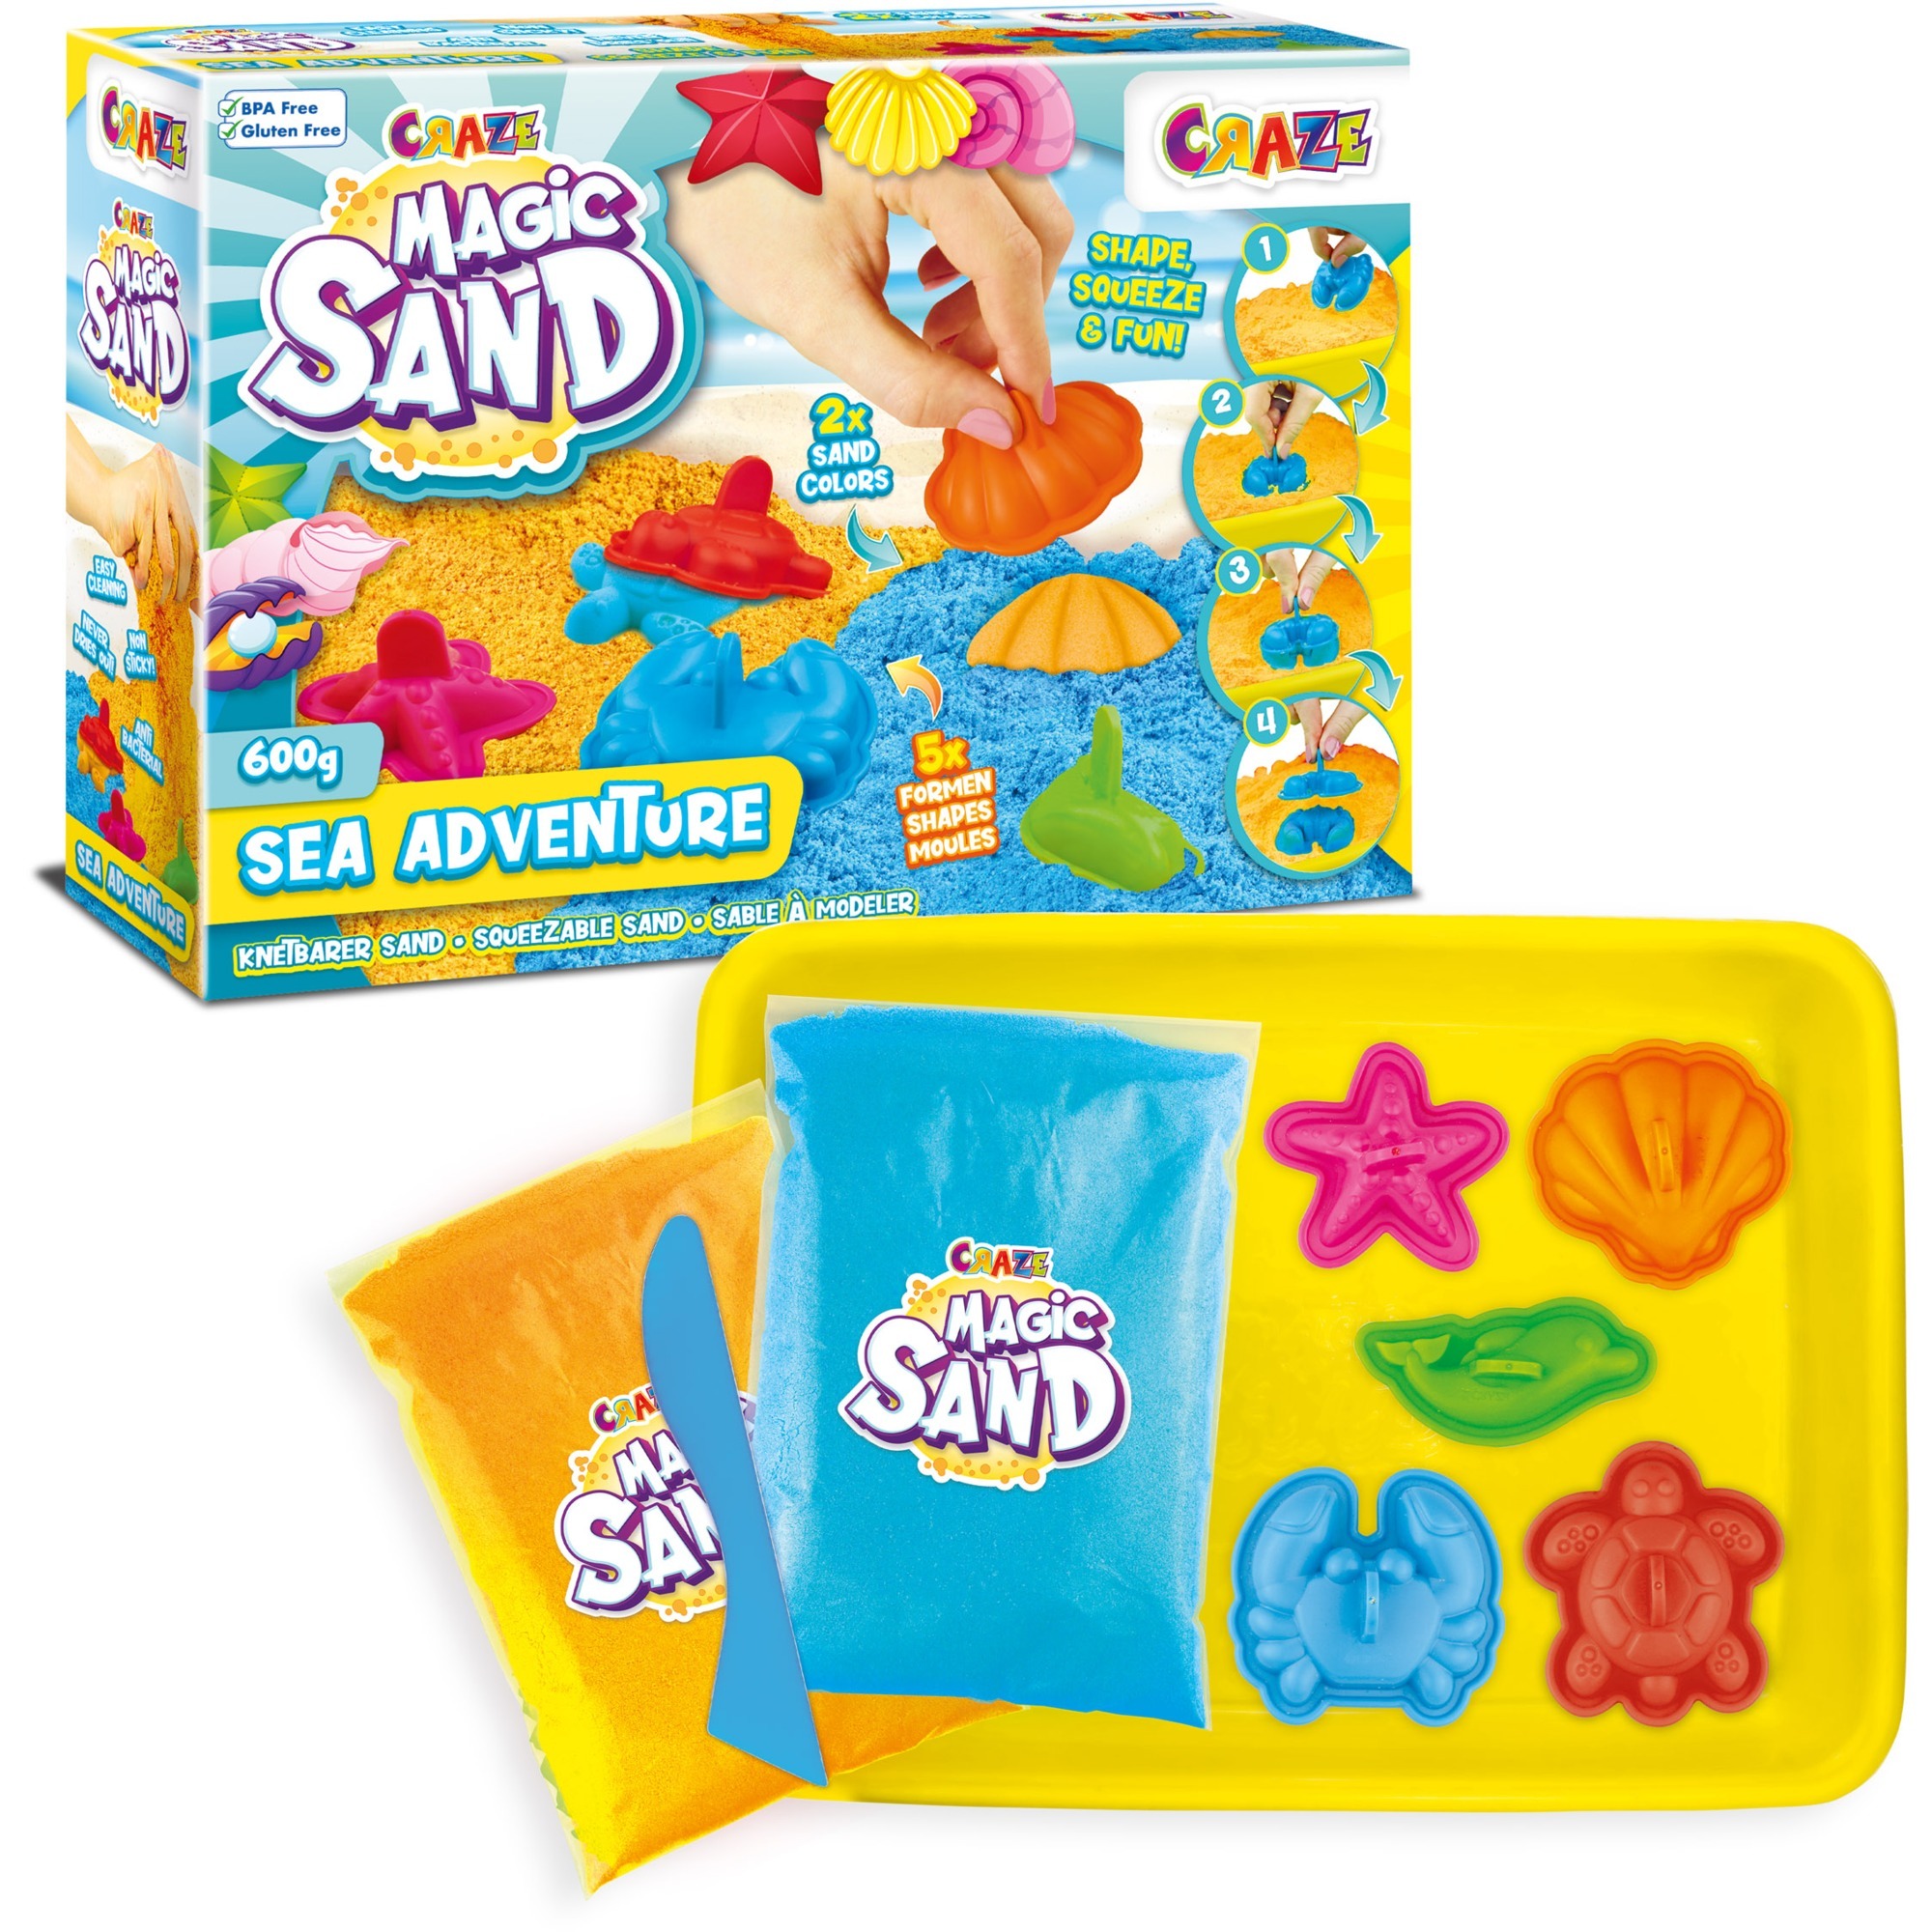 Image of Alternate - Magic Sand Sea Adventures, Spielsand online einkaufen bei Alternate